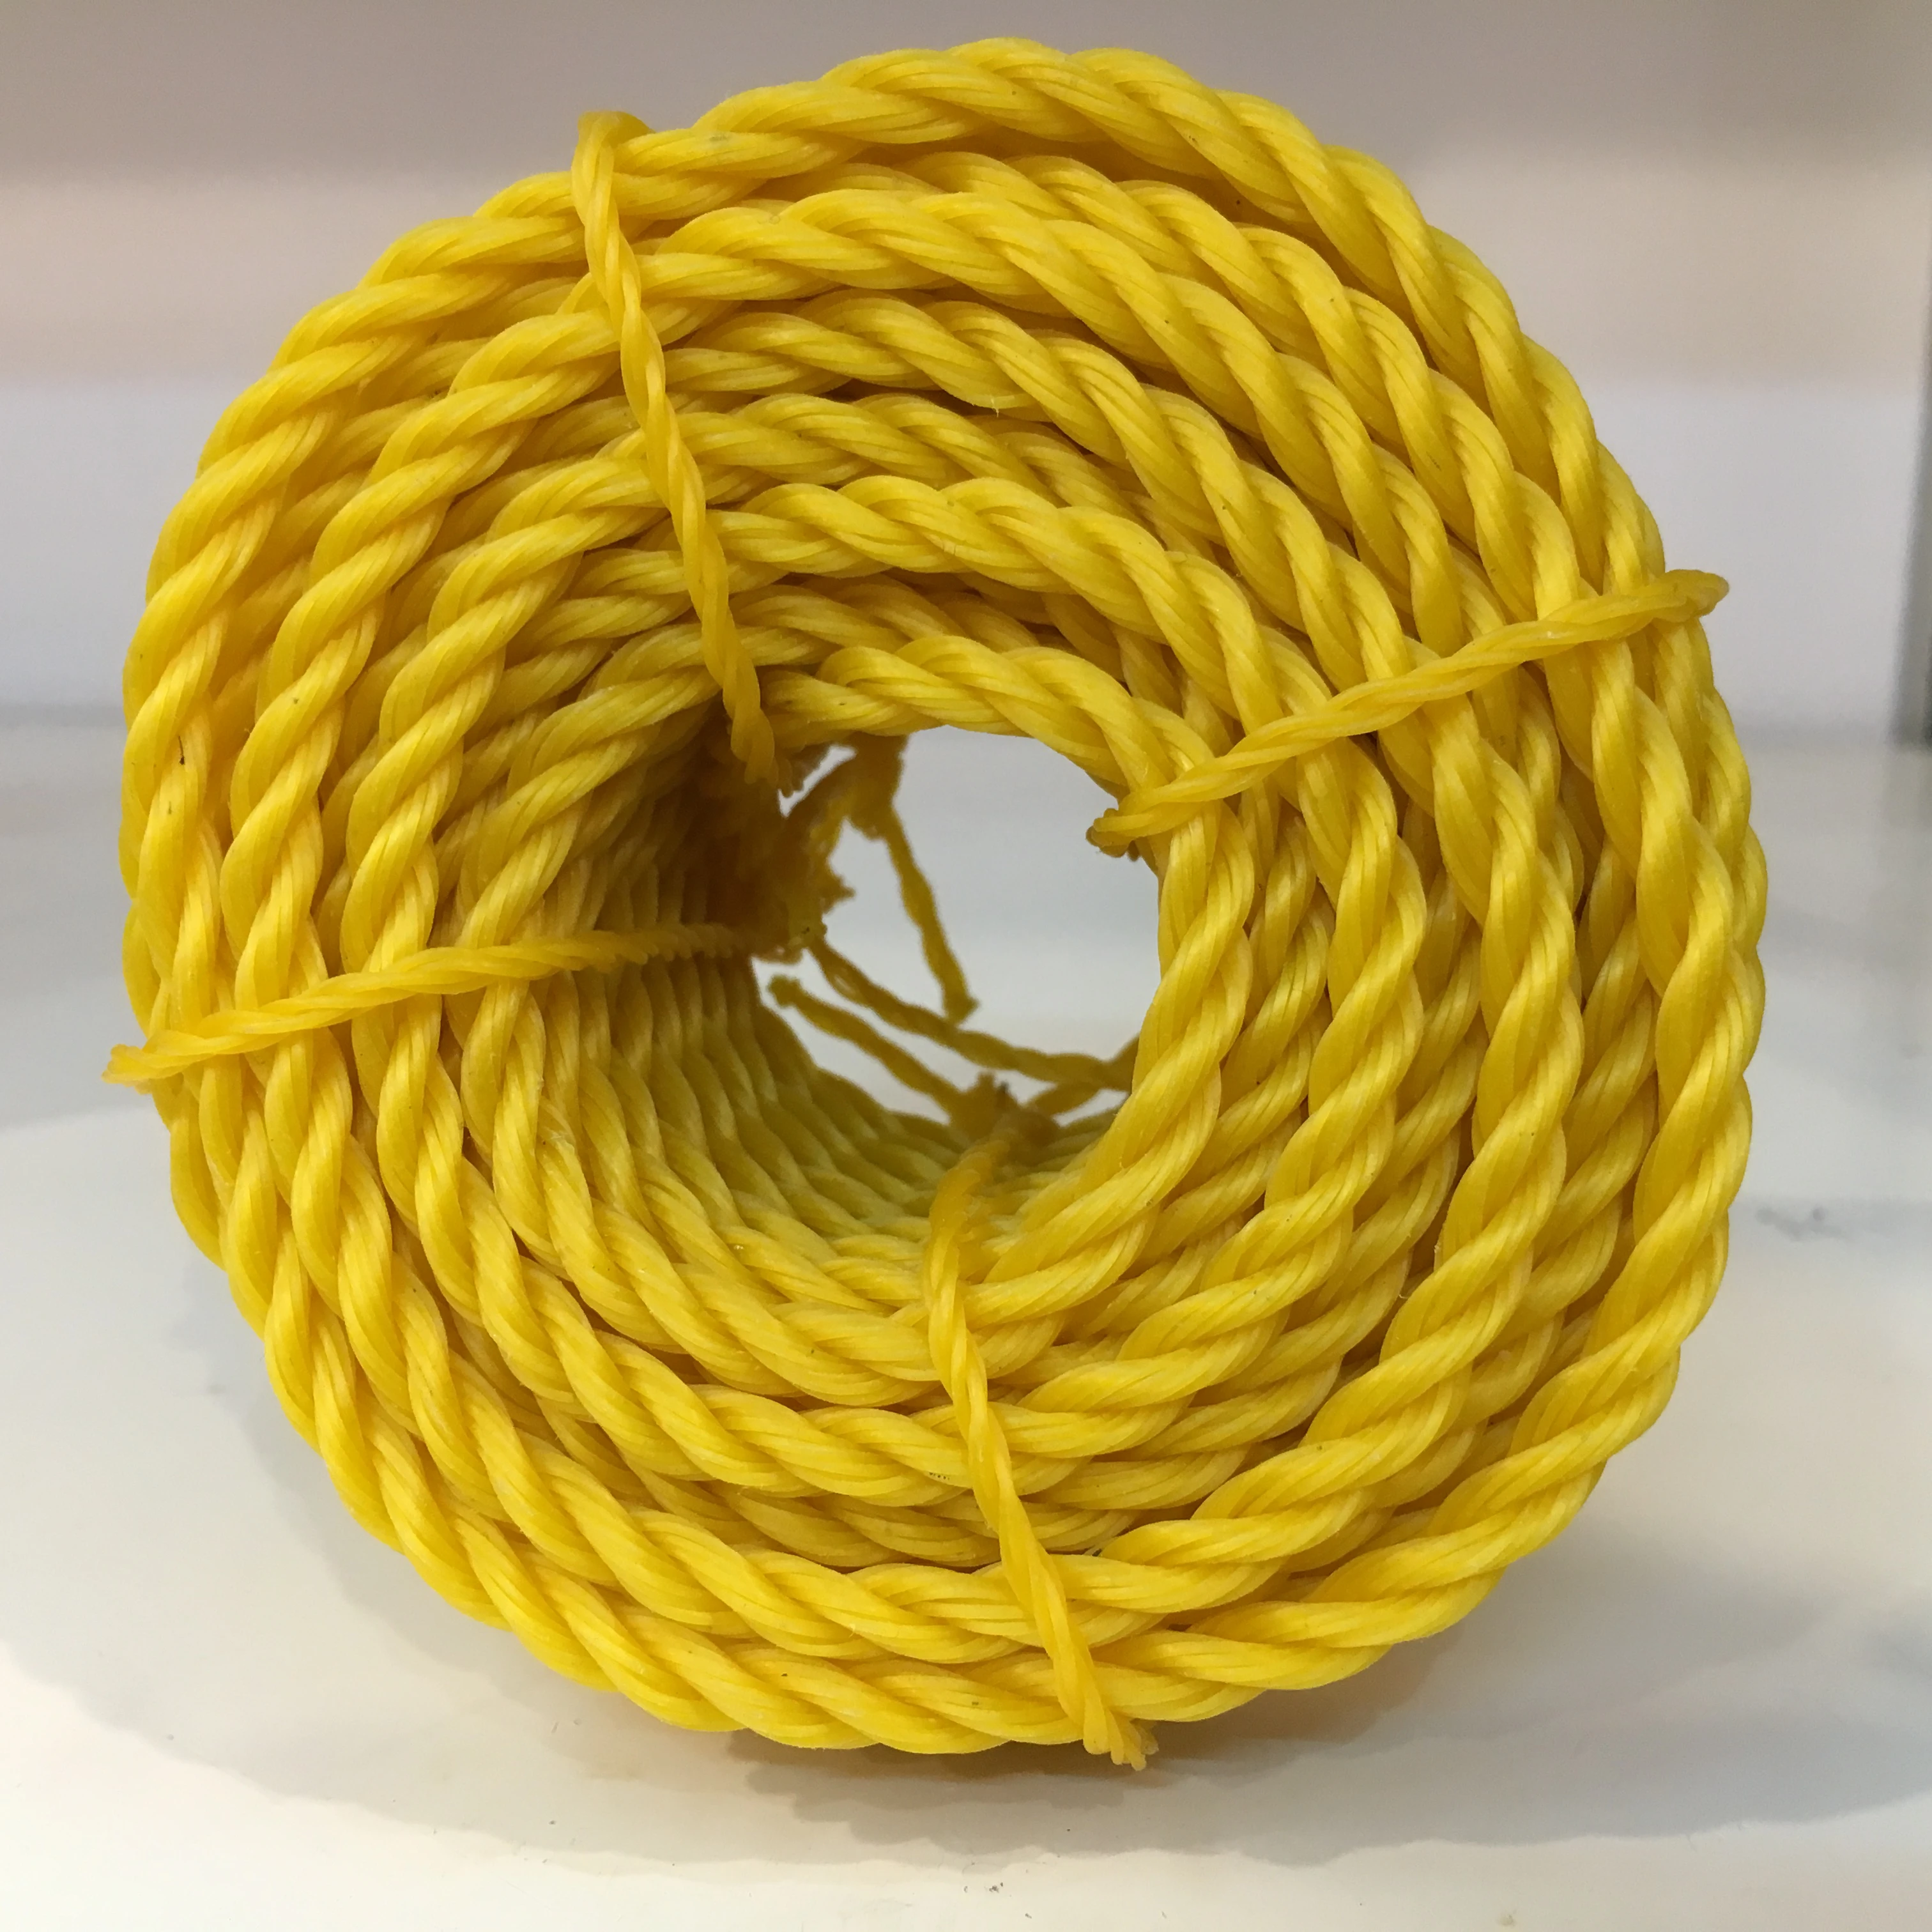 Multi-Use Rope Coil Polyethylene Rope Twisted Packing Polyethylene Rope